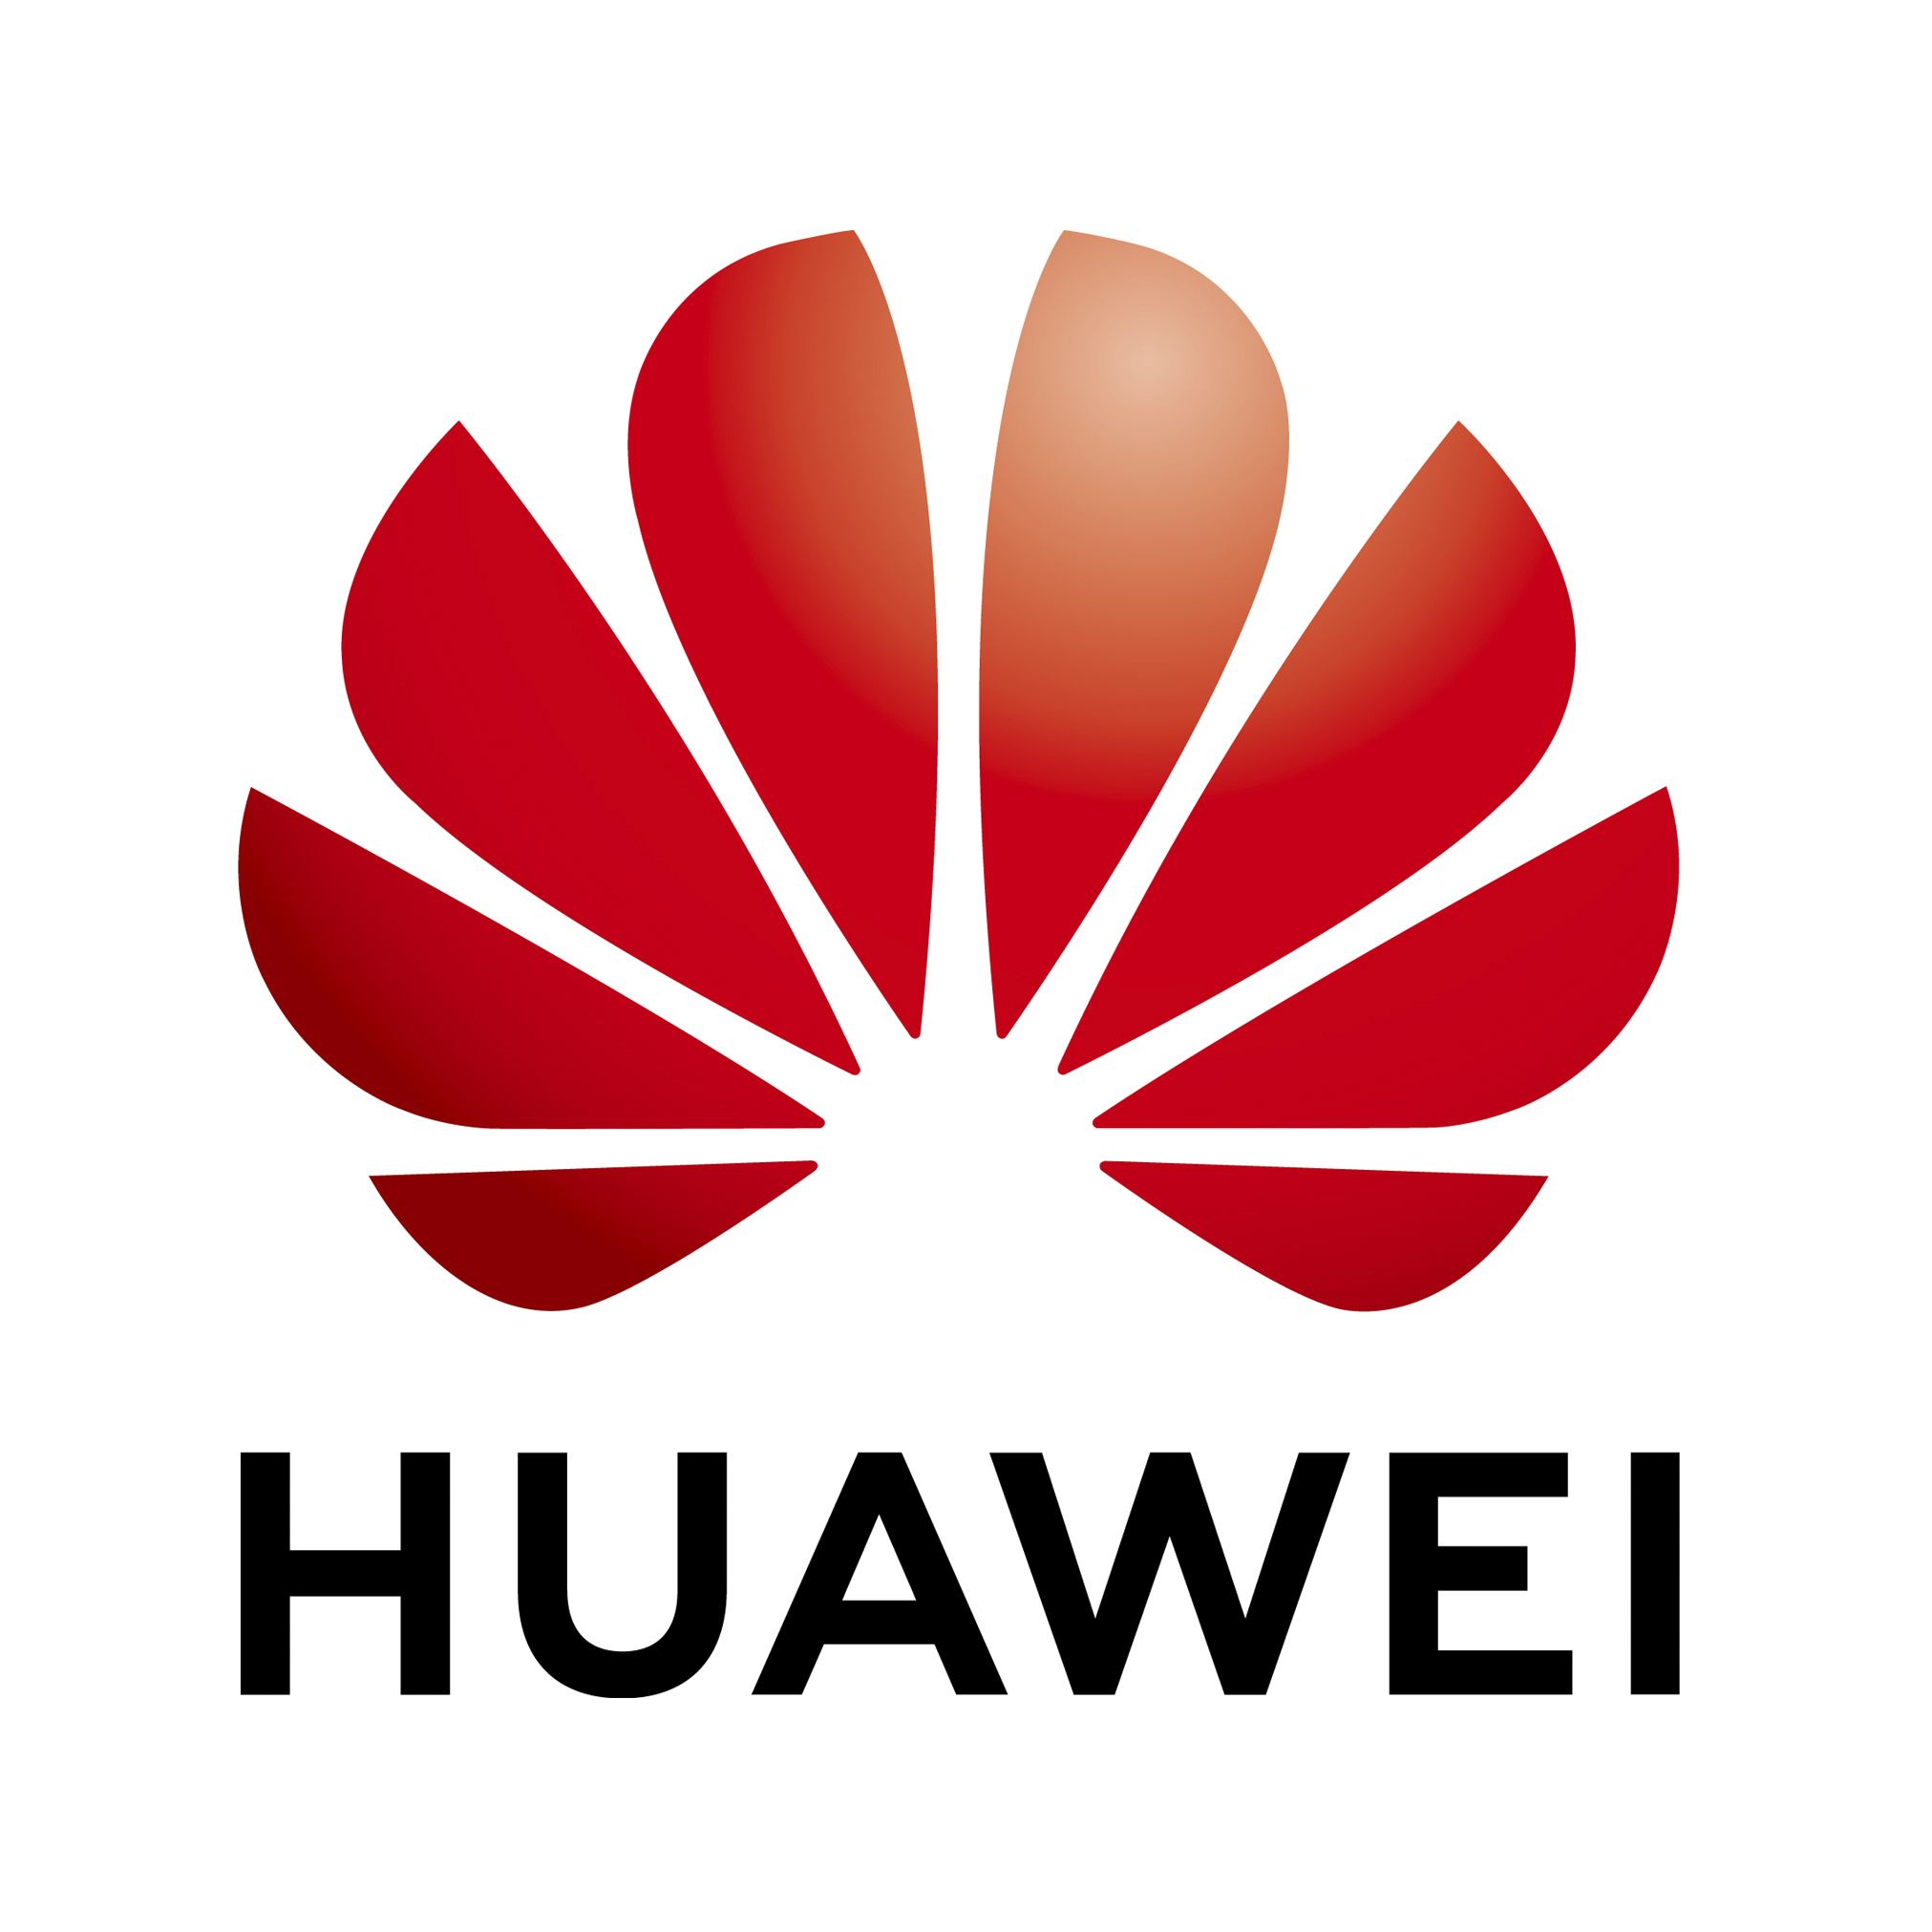 Huawei спільно з UNIDO і міжнародними партнерами створюють Альянс зі штучного інтелекту (AI Alliance) для цифровізації галузей